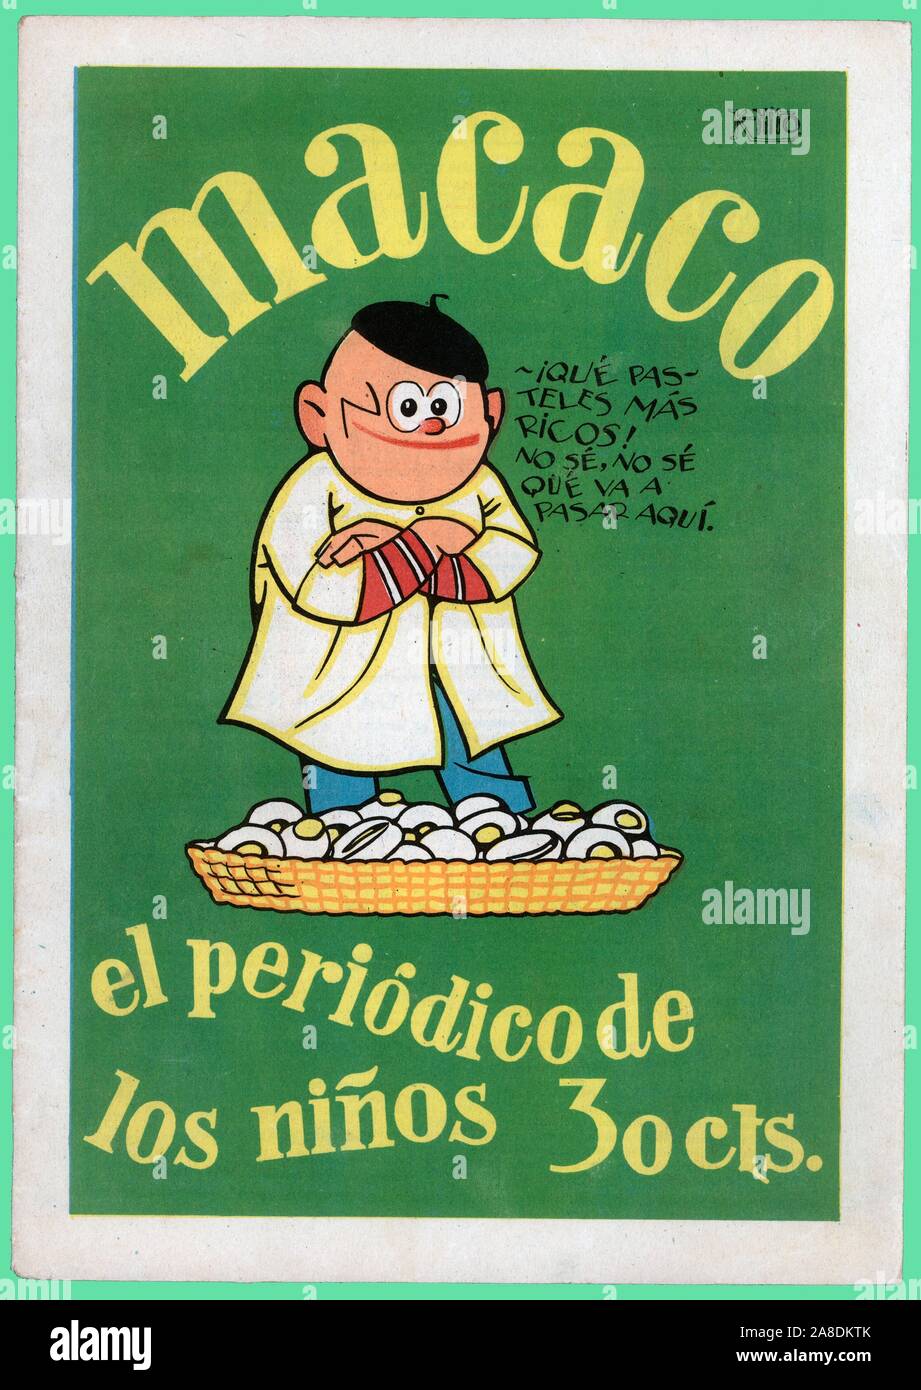 Portada de la revista infantil Macaco, editada en Madrid, junio de 1928. Author: K-HITO. Ricardo García López. Stock Photo